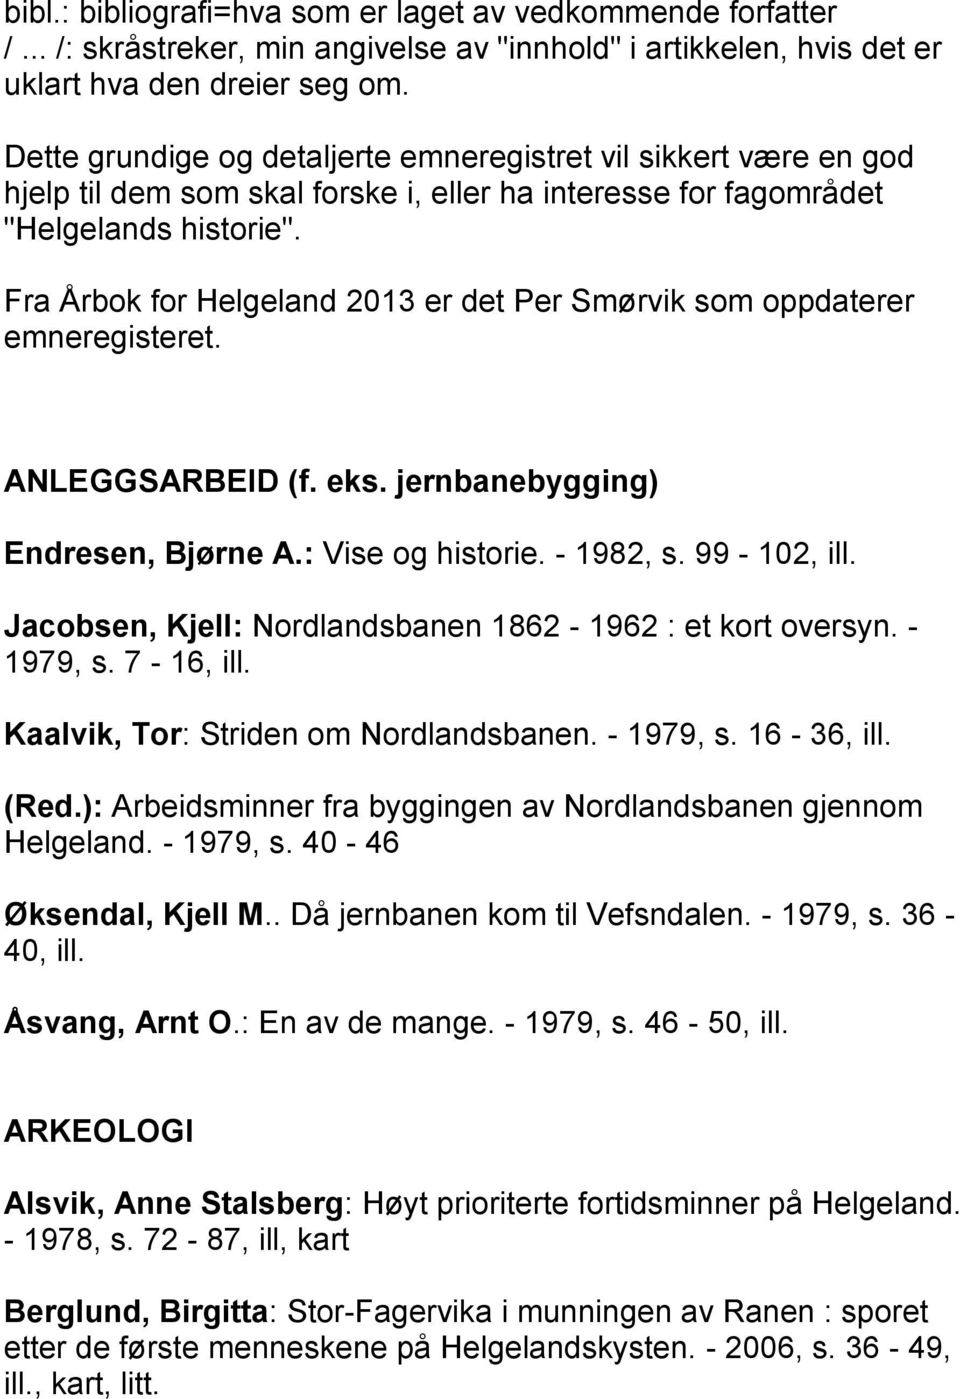 Fra Årbok for Helgeland 2013 er det Per Smørvik som oppdaterer emneregisteret. ANLEGGSARBEID (f. eks. jernbanebygging) Endresen, Bjørne A.: Vise og historie. - 1982, s. 99-102, ill.